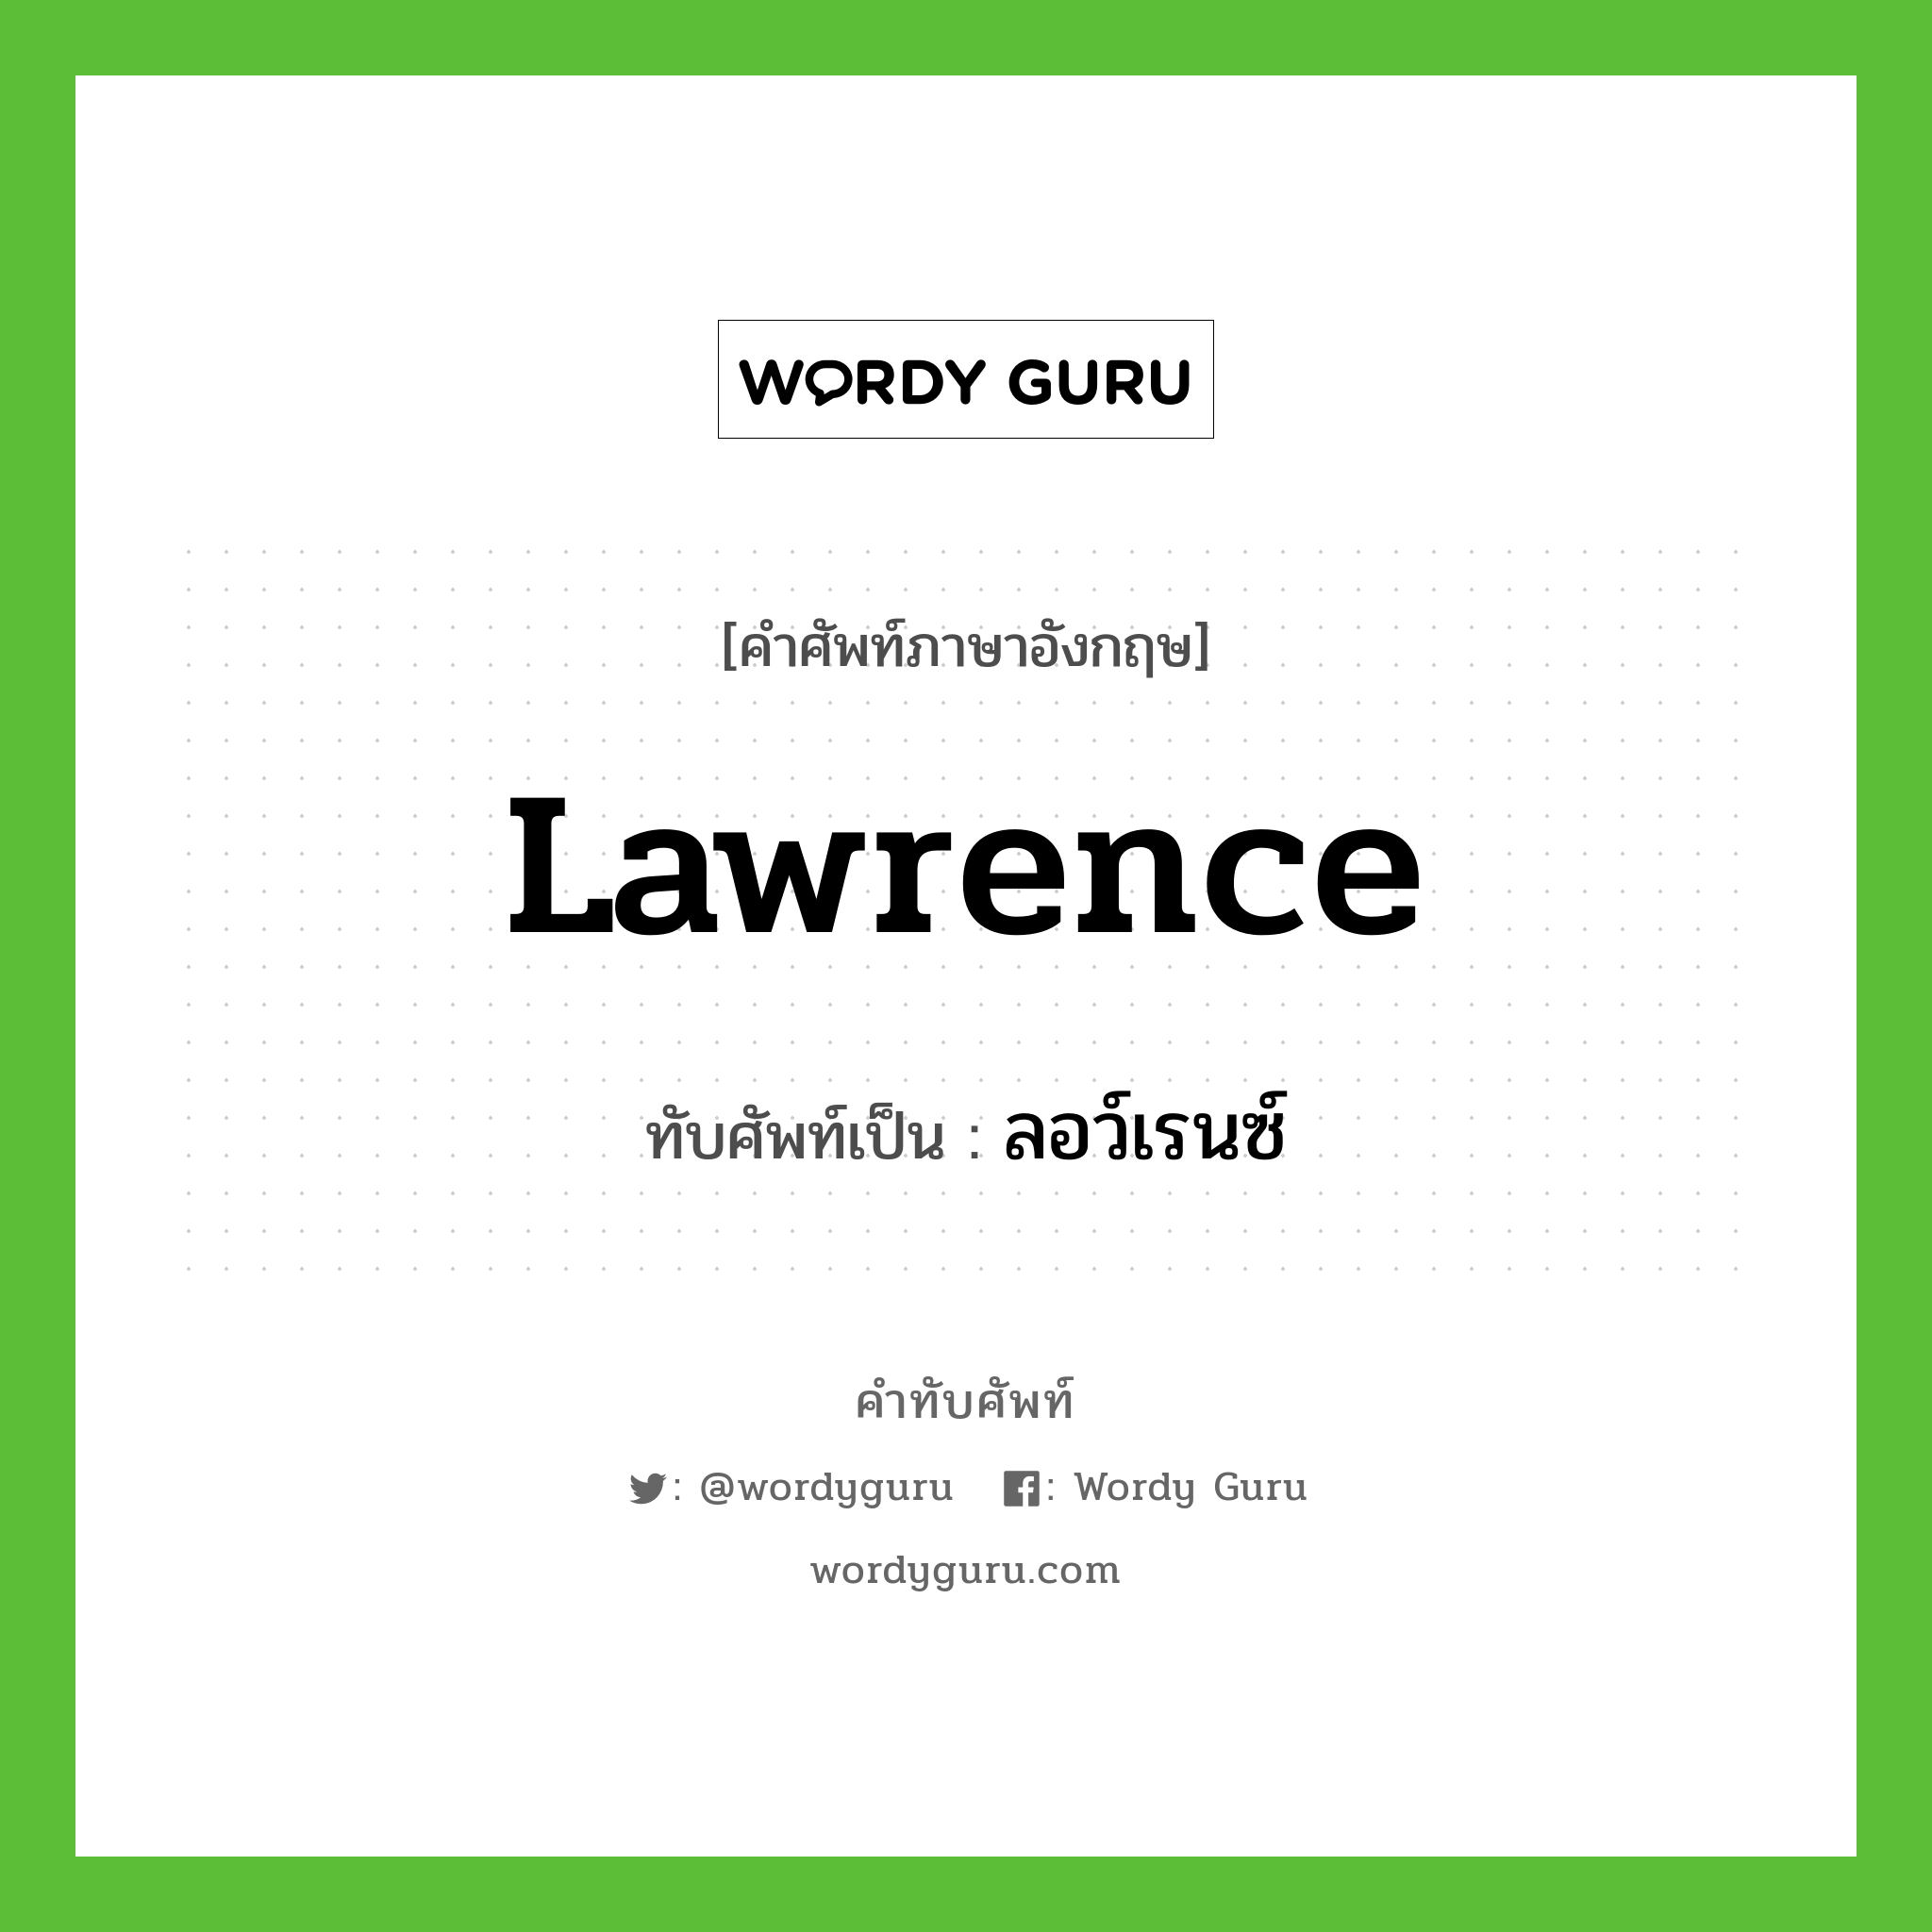 Lawrence เขียนเป็นคำไทยว่าอะไร?, คำศัพท์ภาษาอังกฤษ Lawrence ทับศัพท์เป็น ลอว์เรนซ์